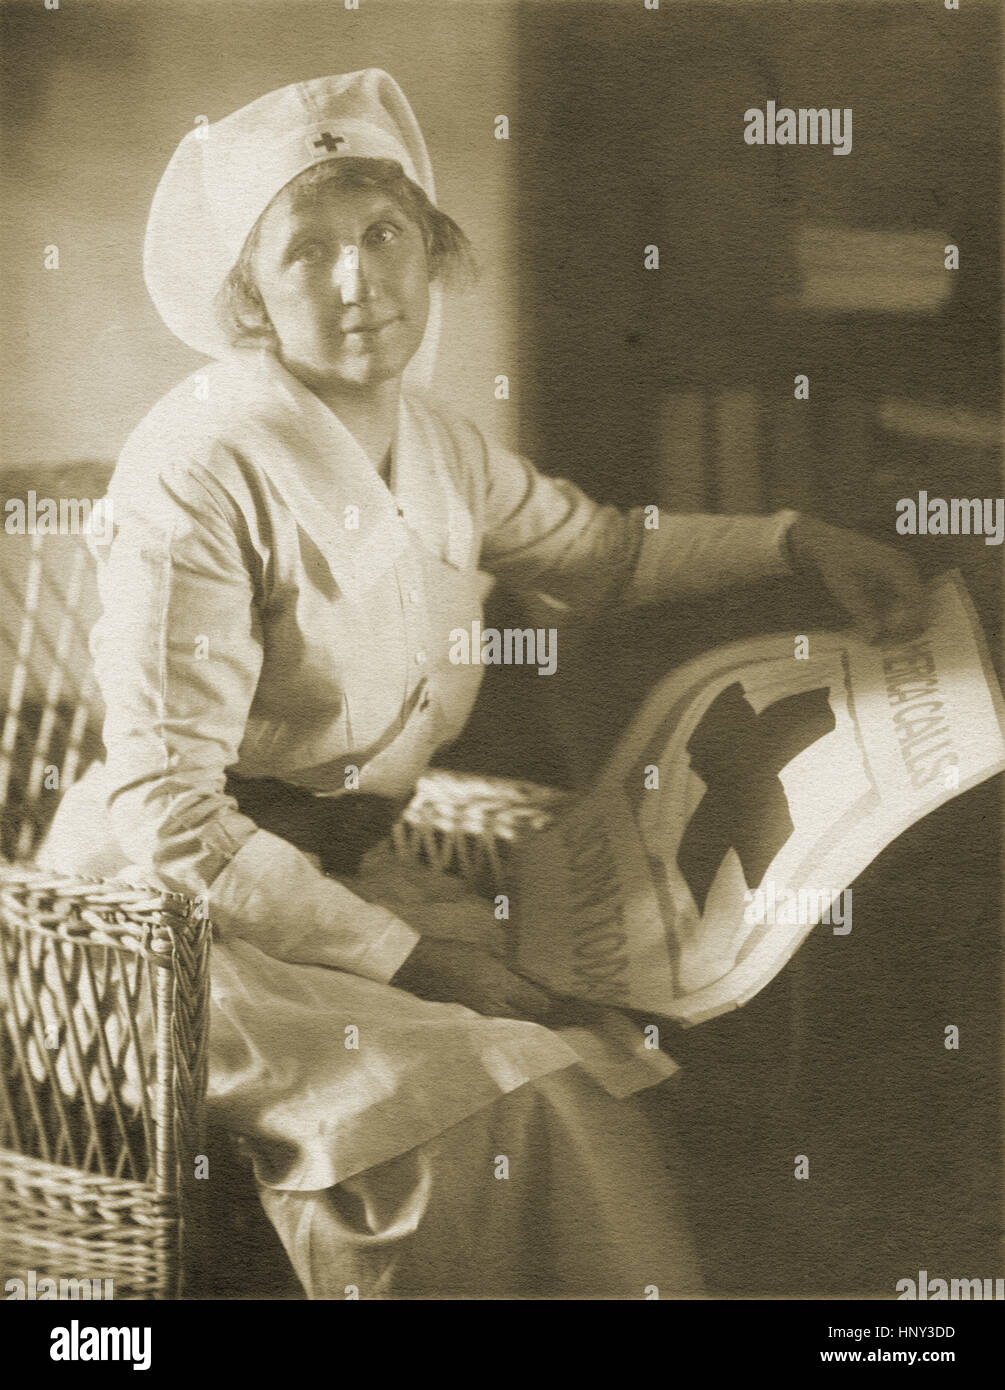 Antiquariato fotografia 1919, Croce Rossa infermiera con "America chiamate - Iscriviti Oggi' poster. Sede: Nuova Inghilterra, Stati Uniti d'America. Fonte: originale stampa fotografica. Foto Stock